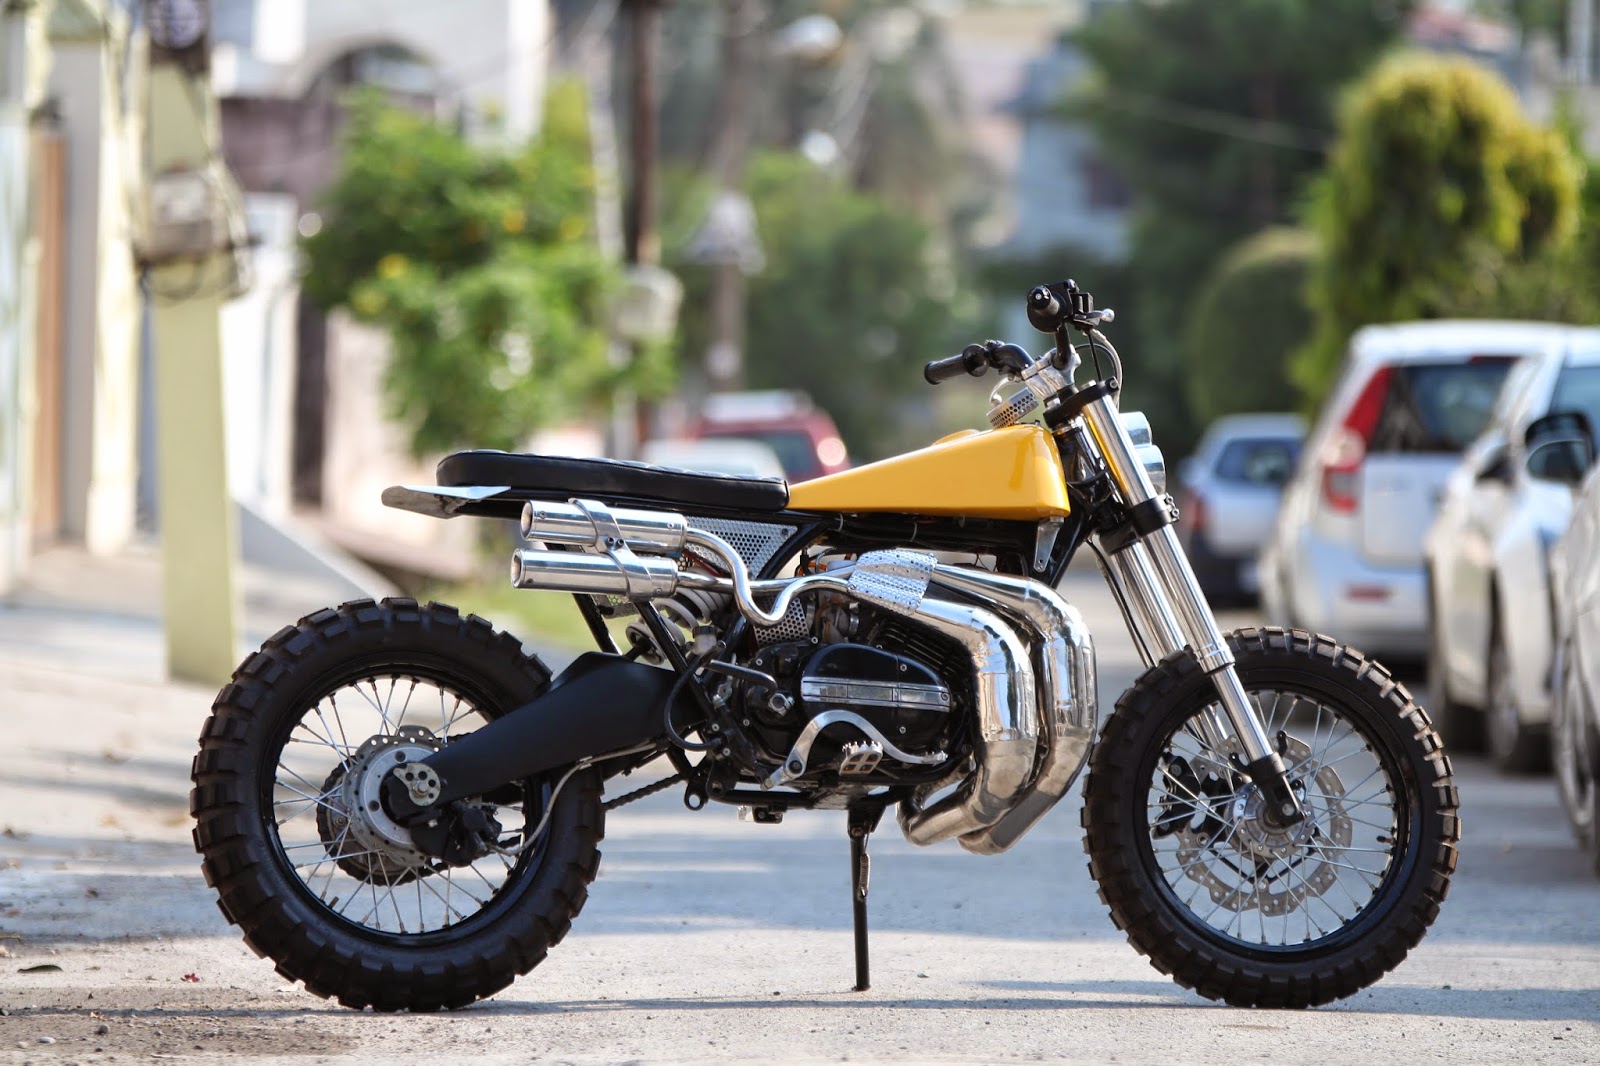 Yamaha RD350 Scrambler by Moto Exotica BikeBound